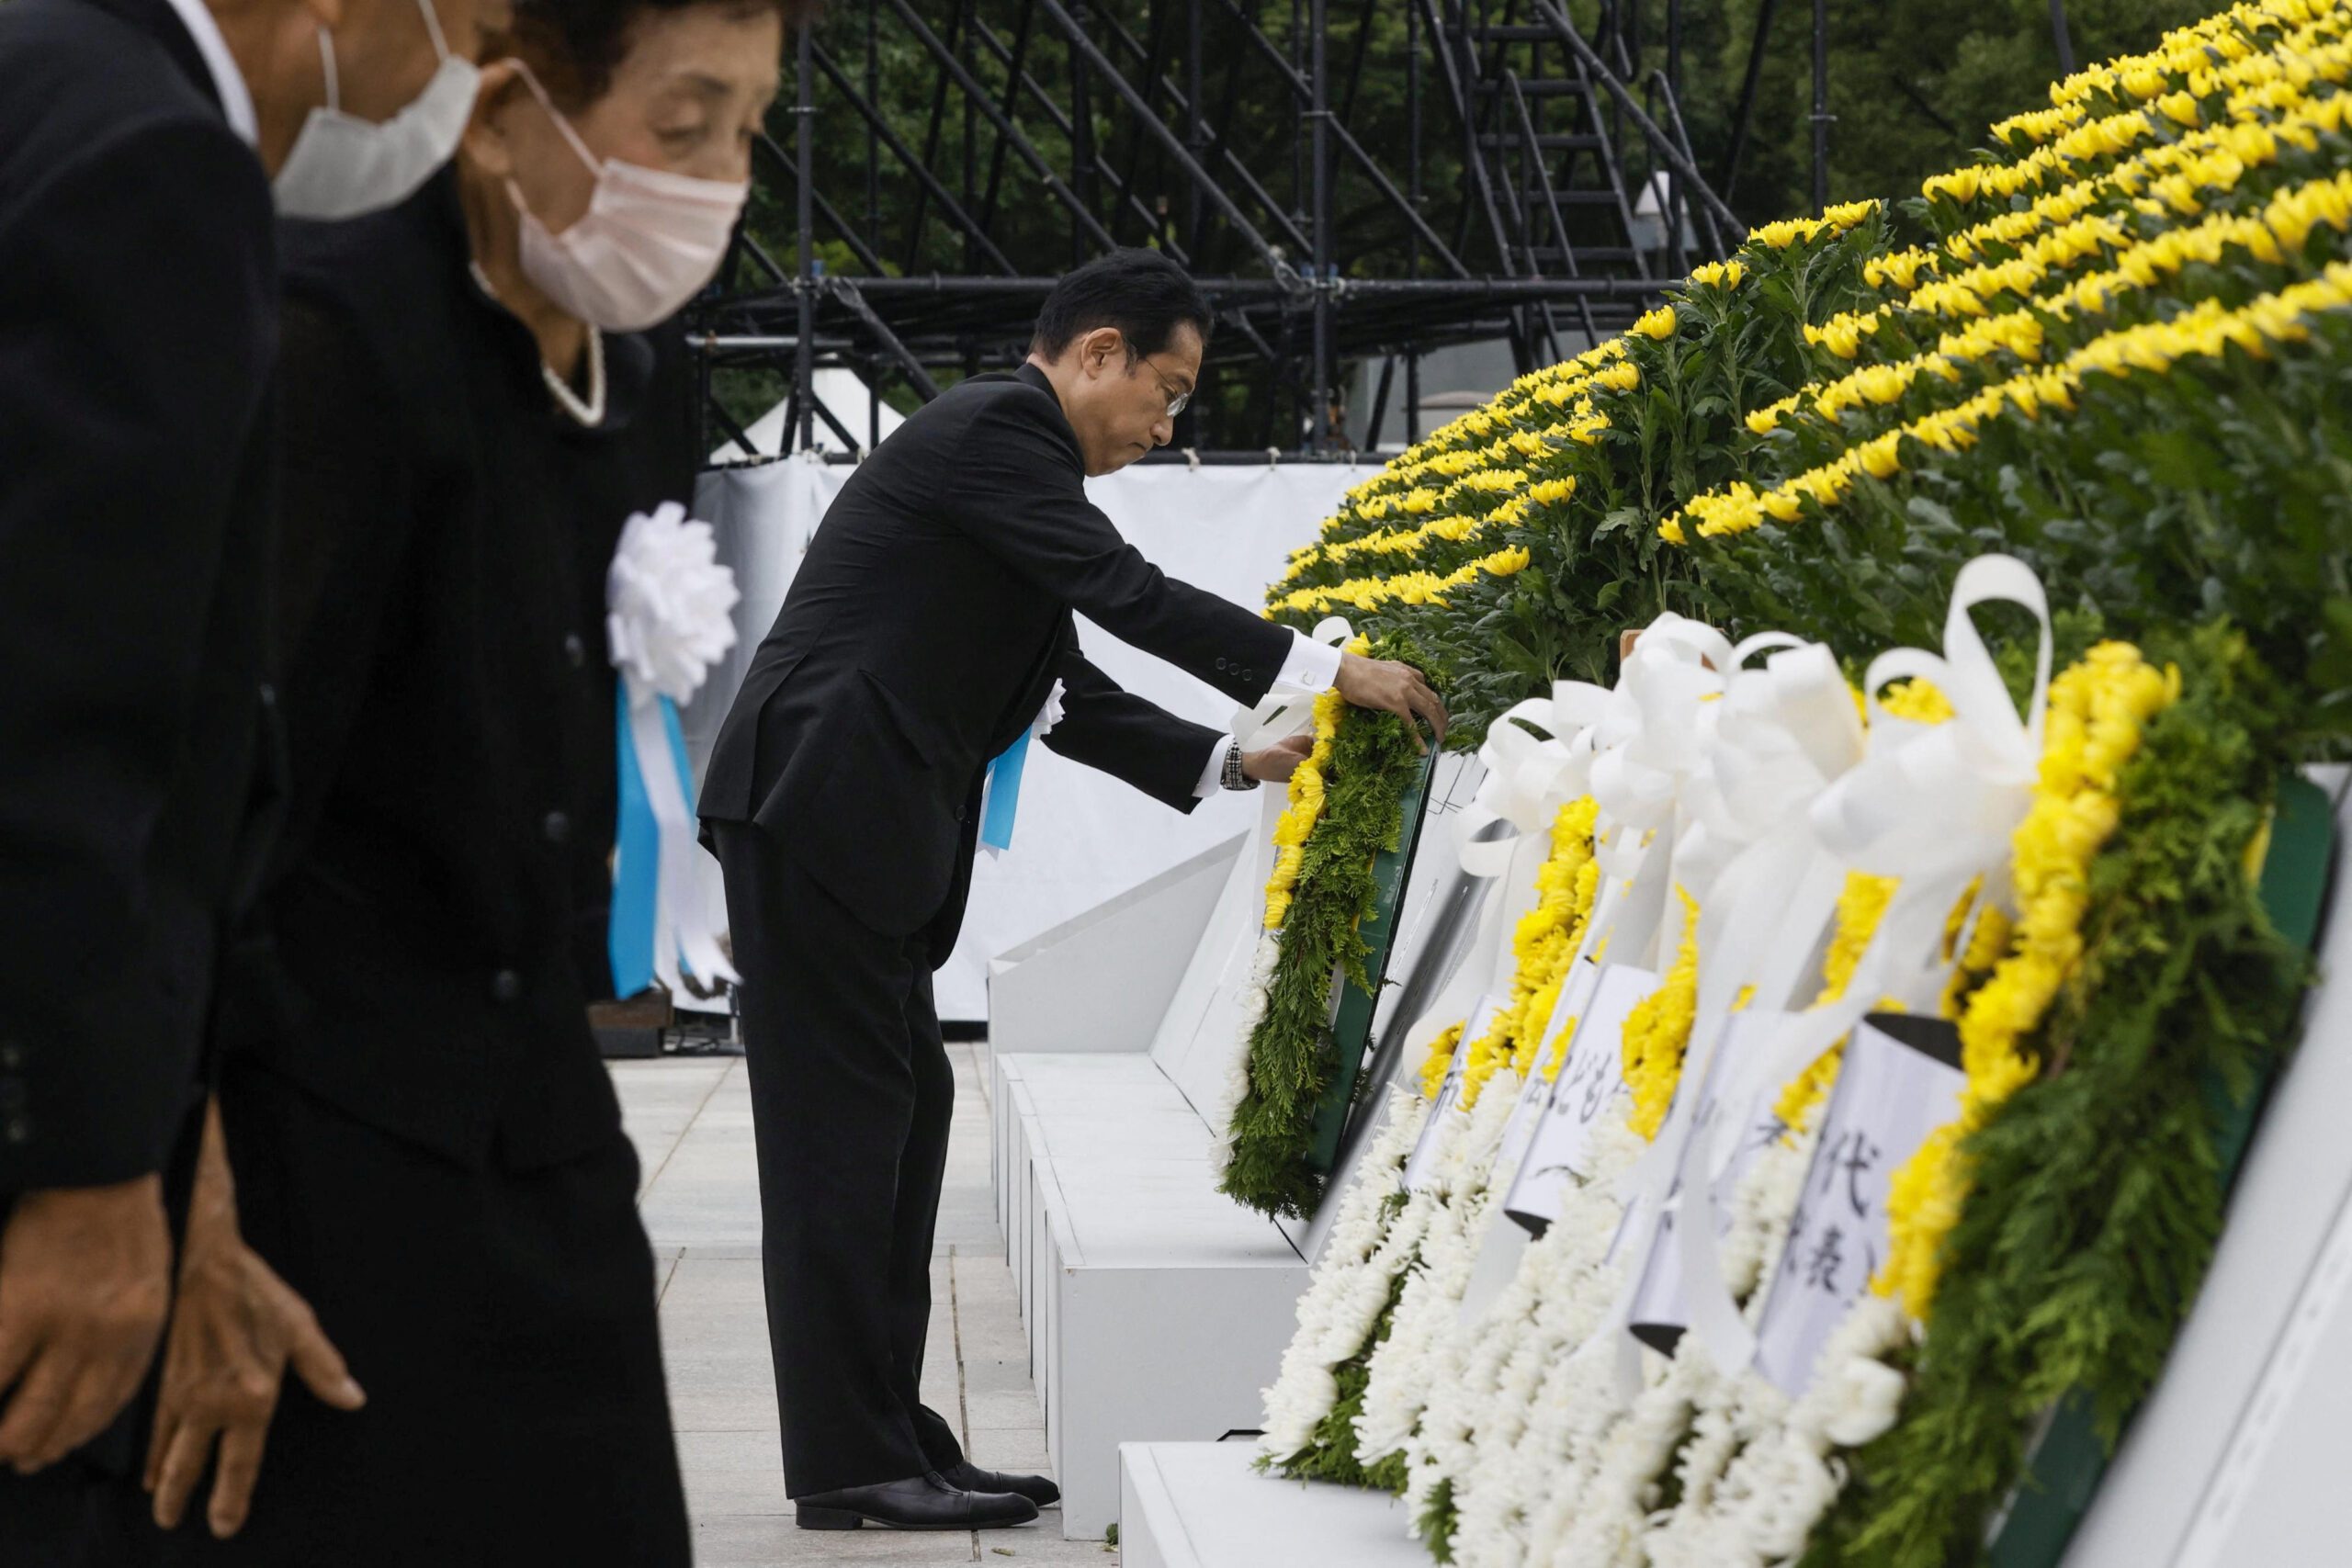 Hiroshima berdoa bagi perdamaian, takut akan perlombaan senjata baru pada peringatan bom atom